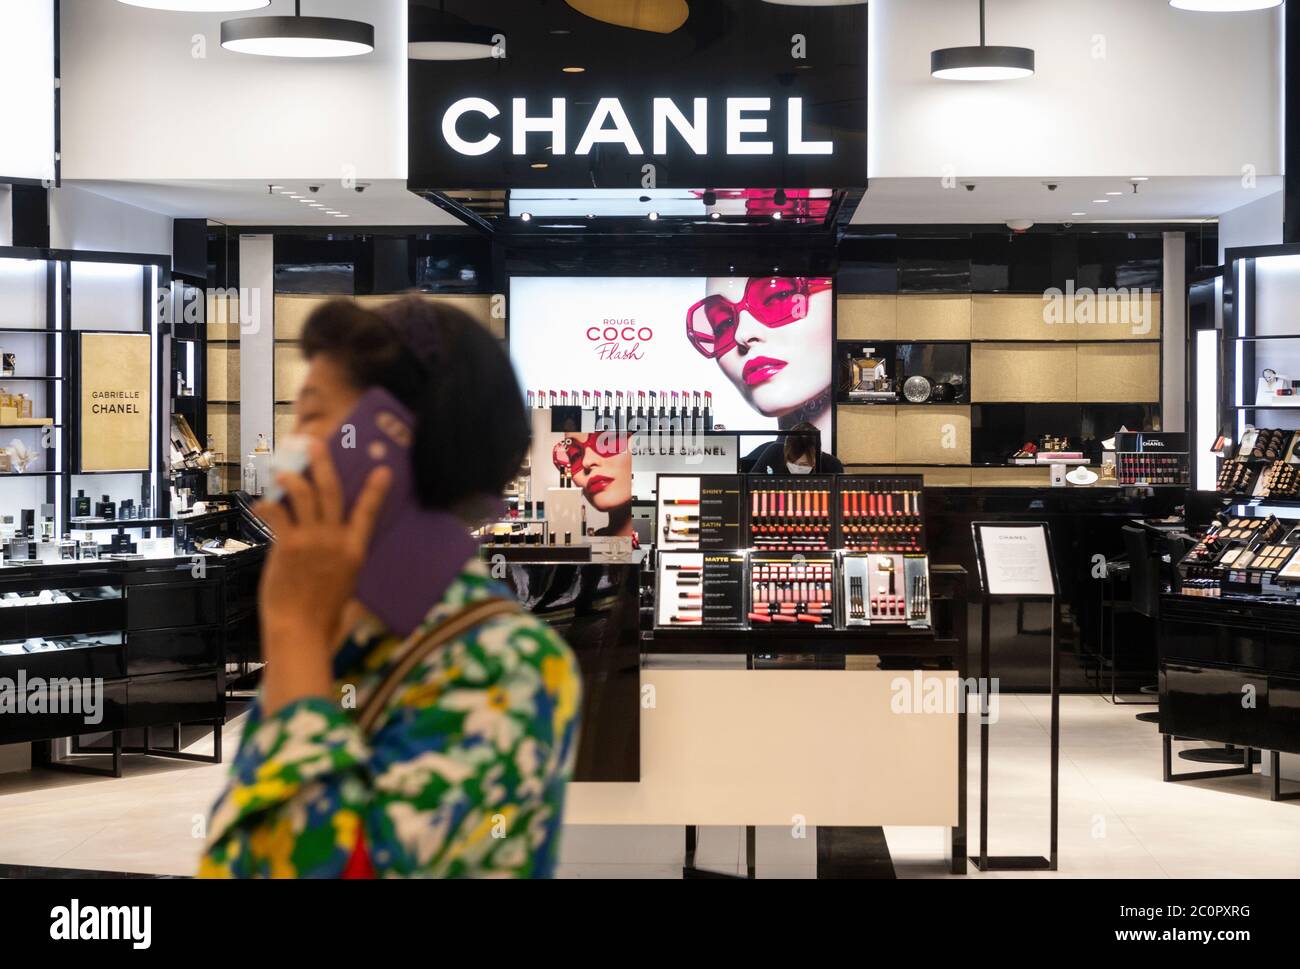 Multinacional francesa, la Marca de ropa y productos de belleza Chanel se  encuentra en Hong Kong Fotografía de stock - Alamy